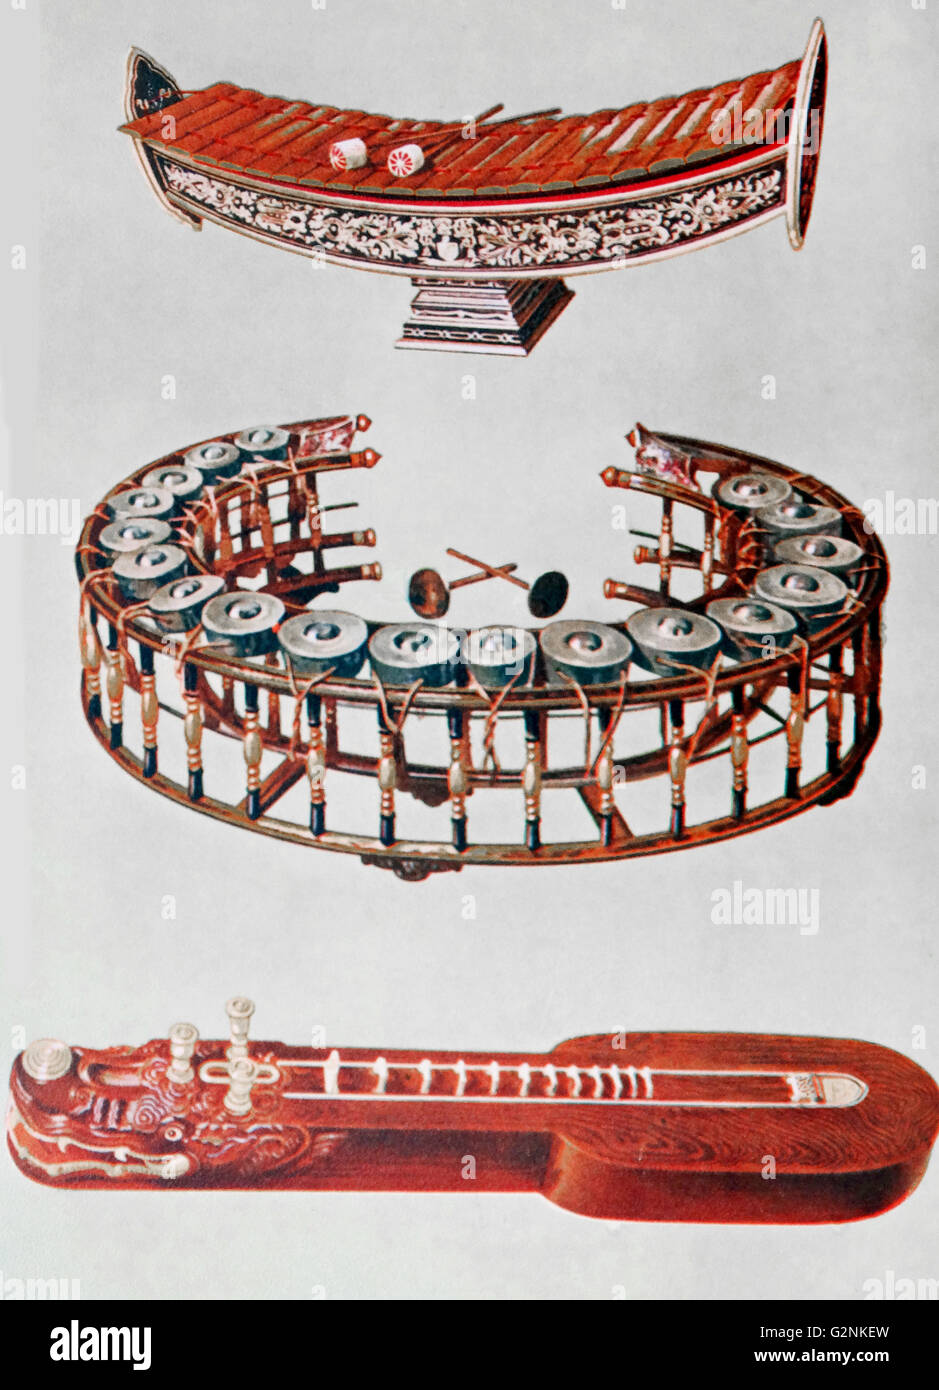 Ranat Ek, Khong Yai und Ta'Khay. Diese Instrumente gehörte zu seiner Majestät, der König von Siam. Harmonikas aus Holz und Metall wie die Ranat und Khong waren die Grundlage der Musik in Siam, Burma, Java und den Indischen Archipel. Stockfoto